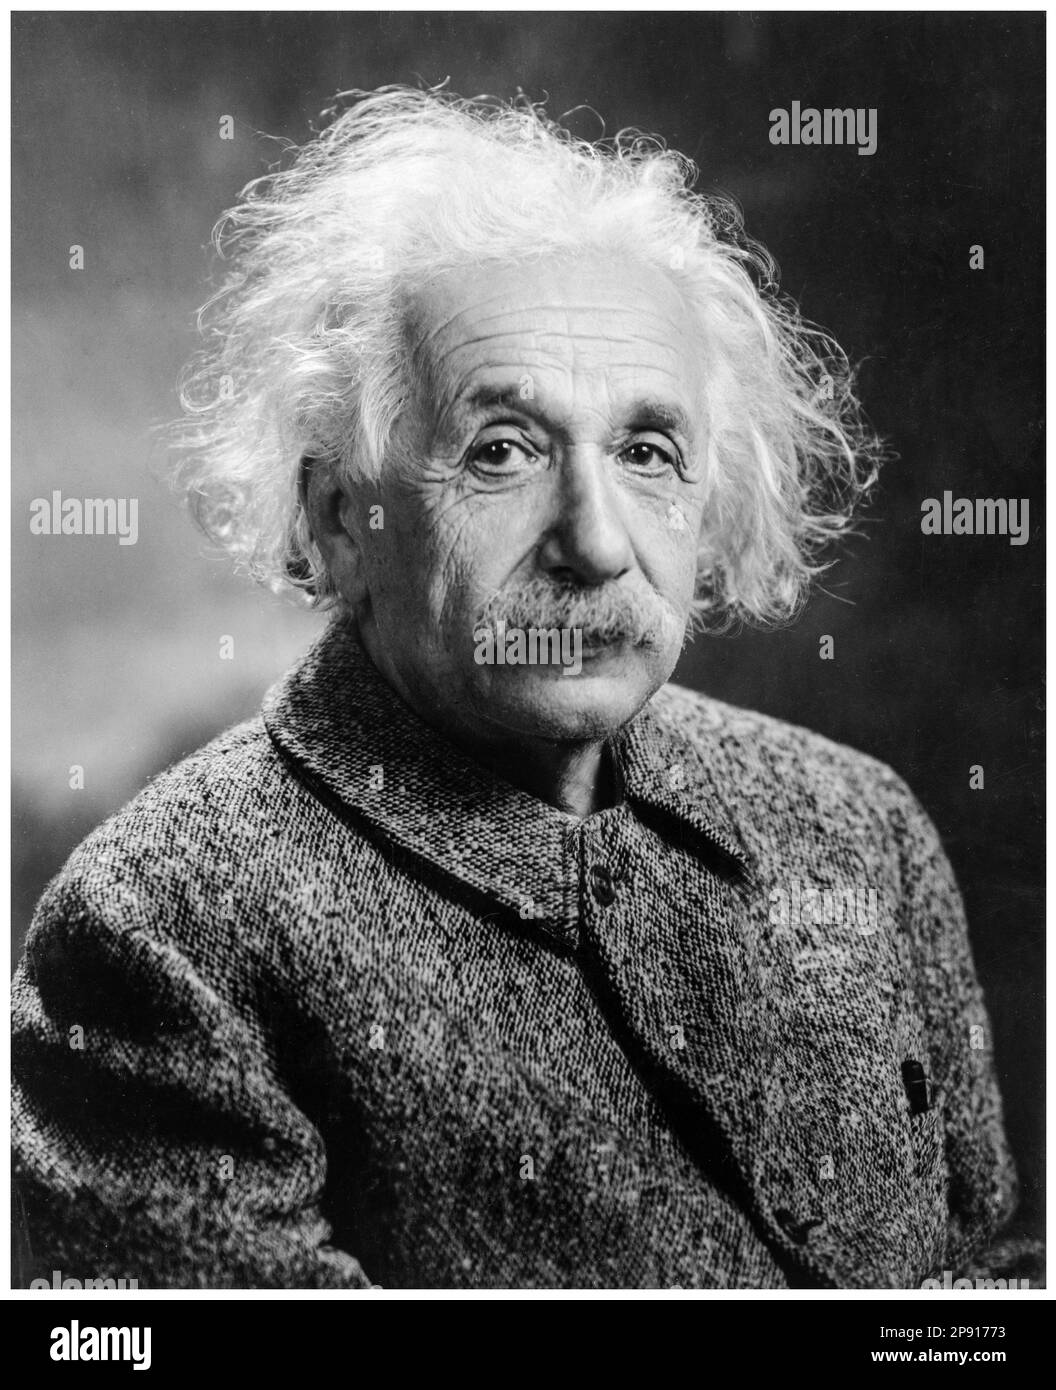 Albert Einstein (1879-1955), German born theoretical physicist, portrait photograph by Orren Jack Turner, circa 1947 Stock Photo